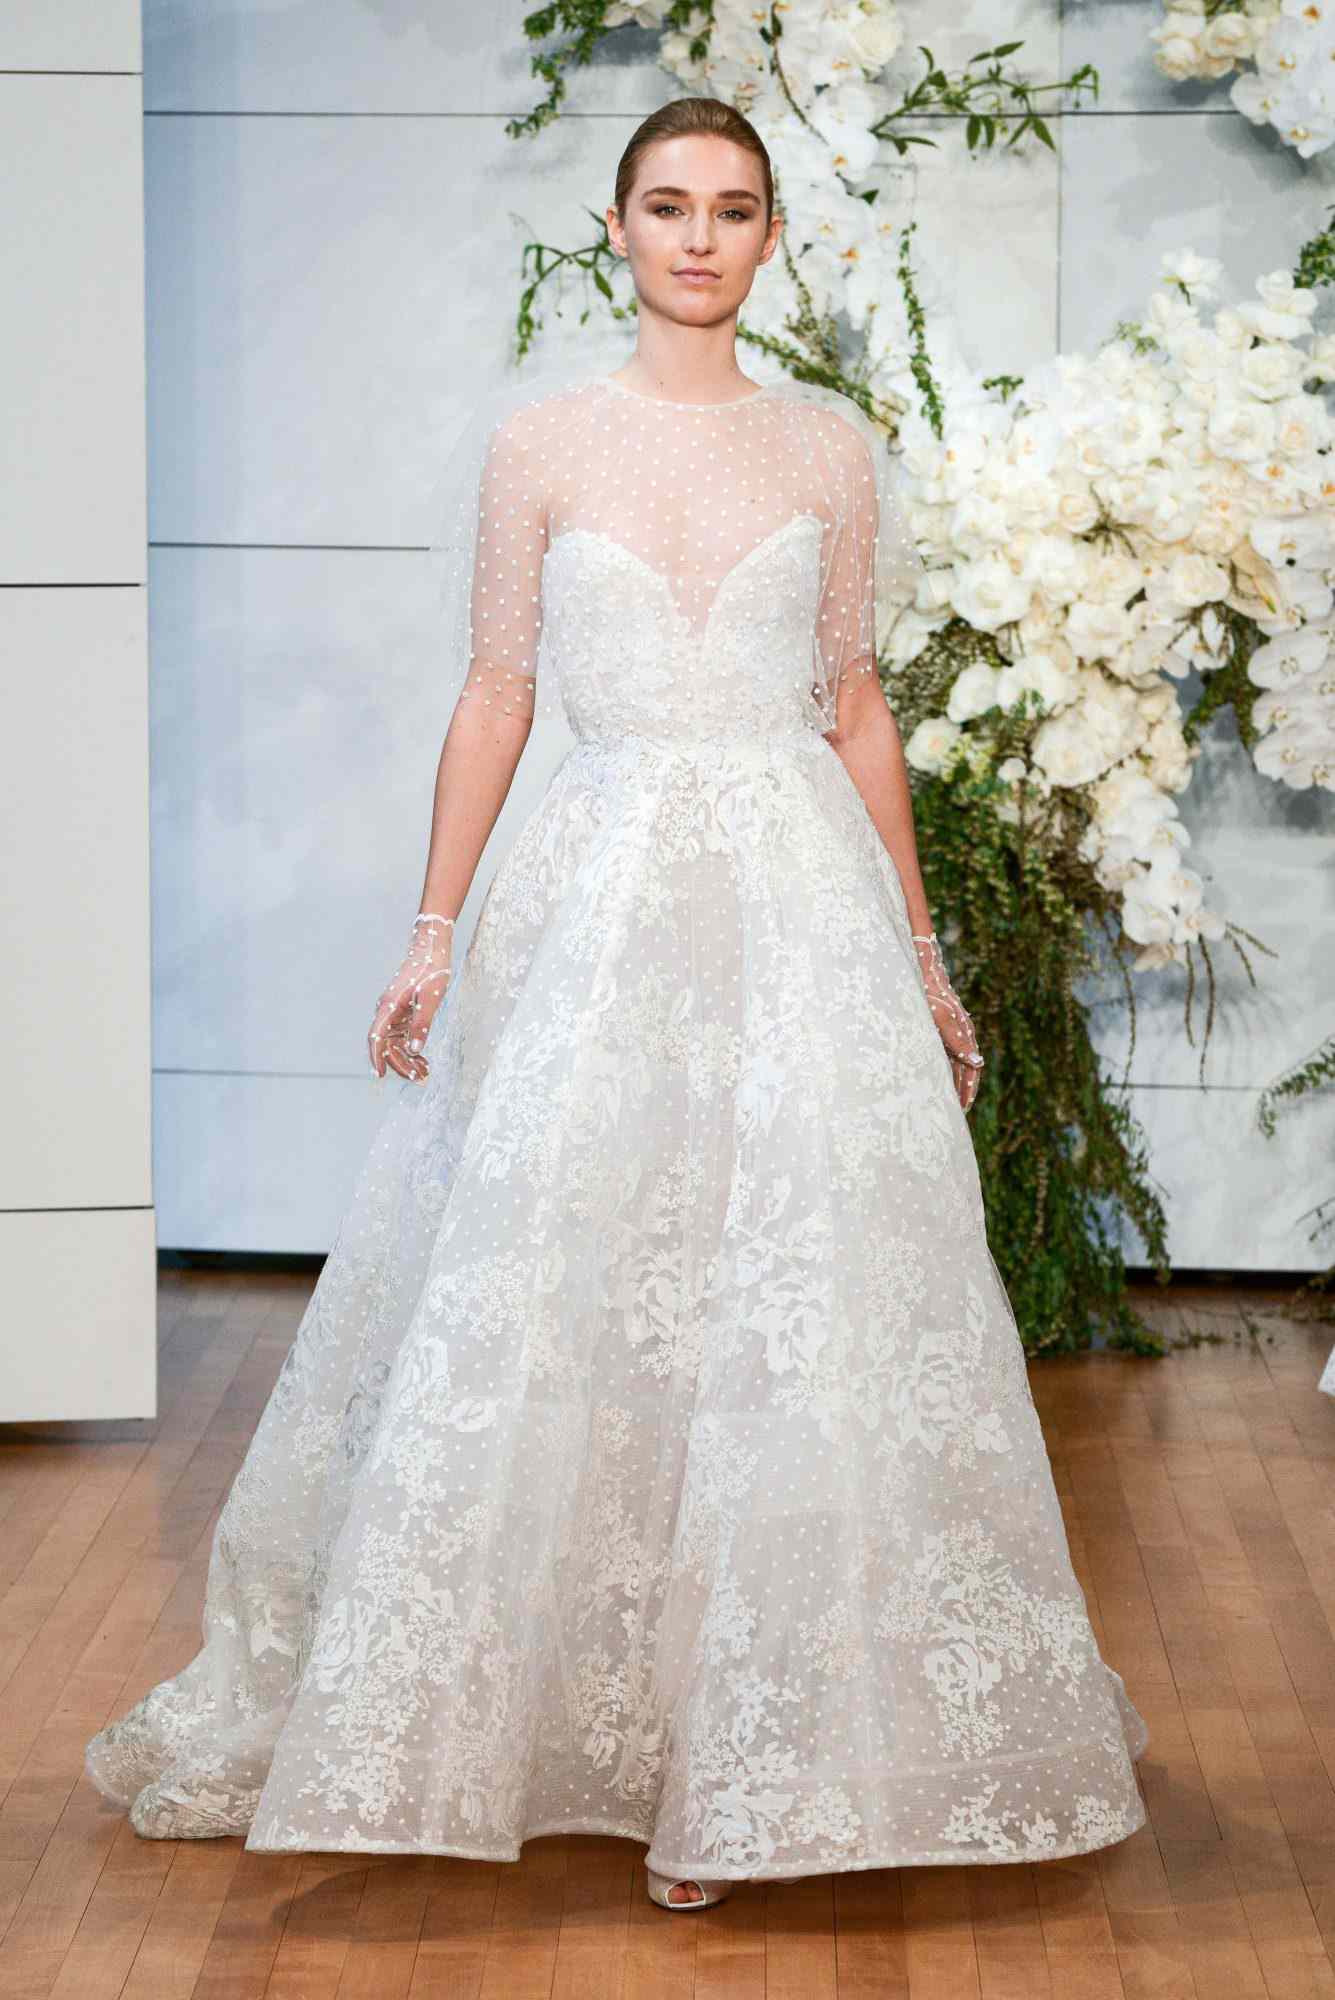 Monique Lhuillier Spring 2018 Wedding Dress Collection | Martha Stewart